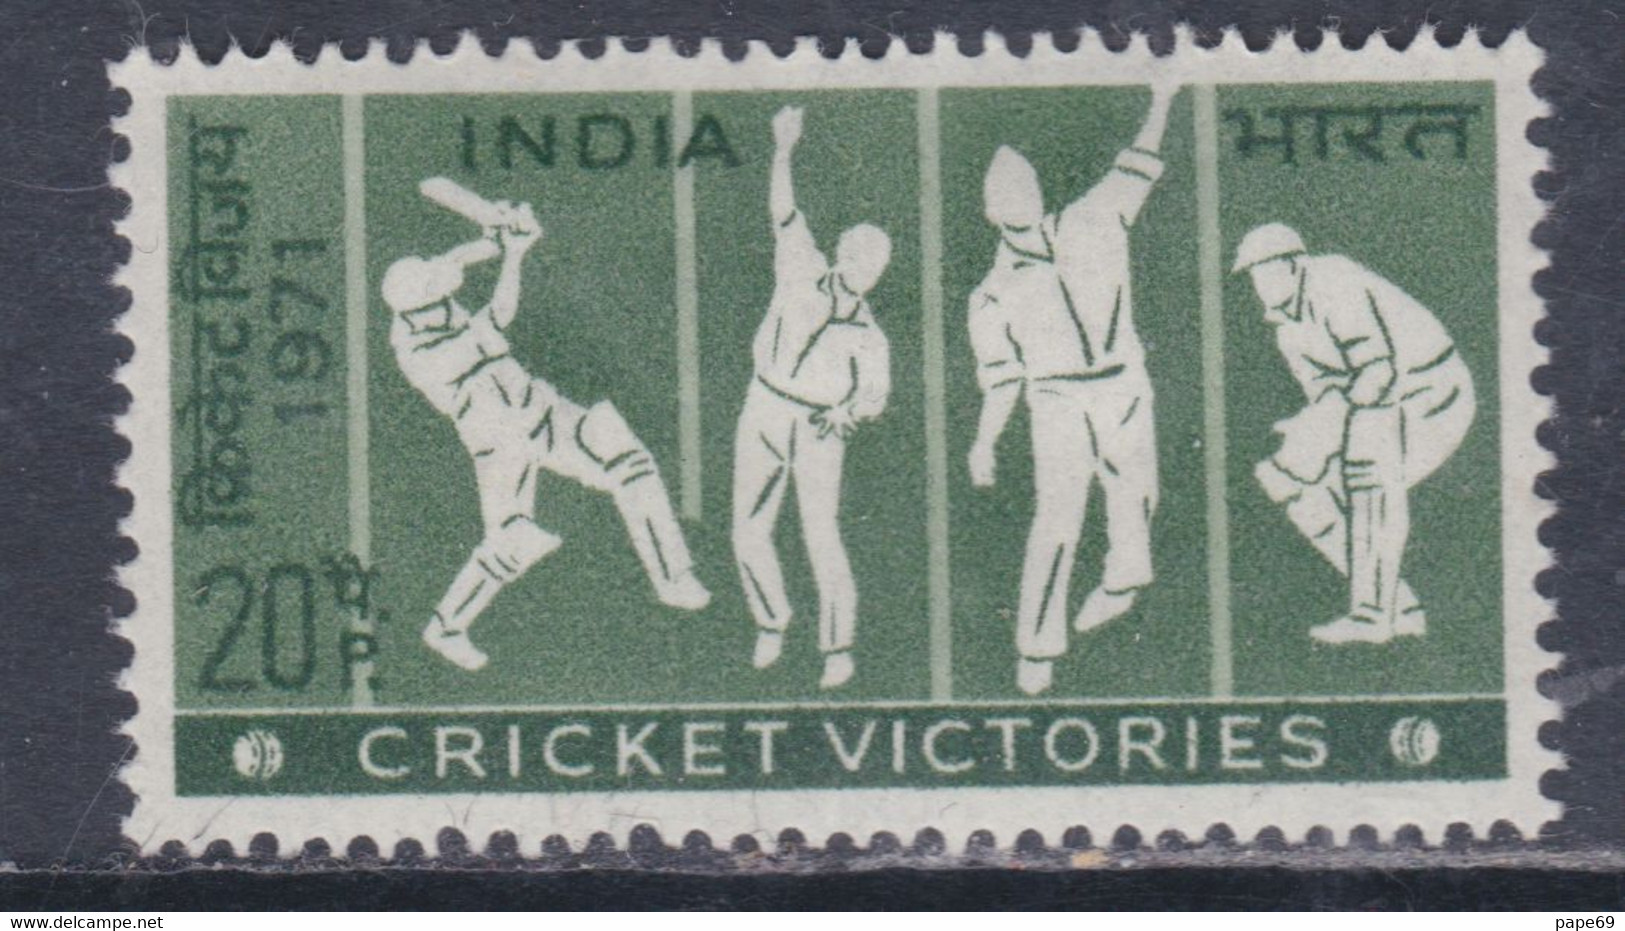 Inde N° 334 X Victoires Indiennes Au Cricket Trace De Charnière Sinon TB - Unused Stamps